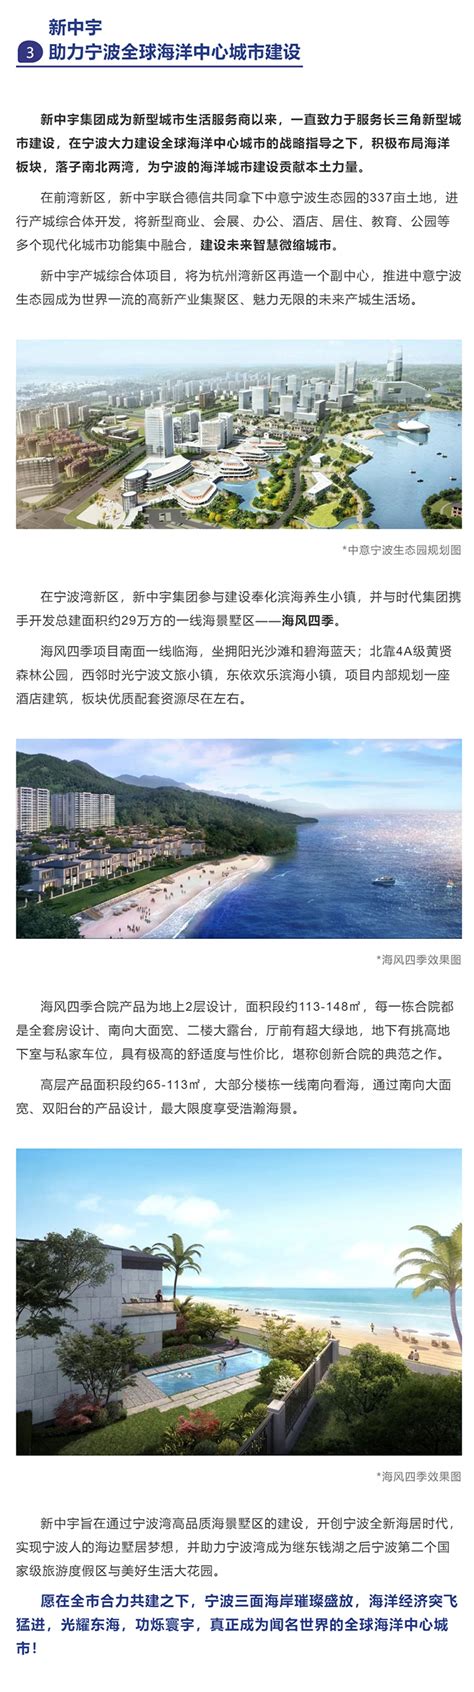 海滨城市发展建设背景背景图片下载_6085x4000像素JPG格式_编号1pyfl7rk1_图精灵